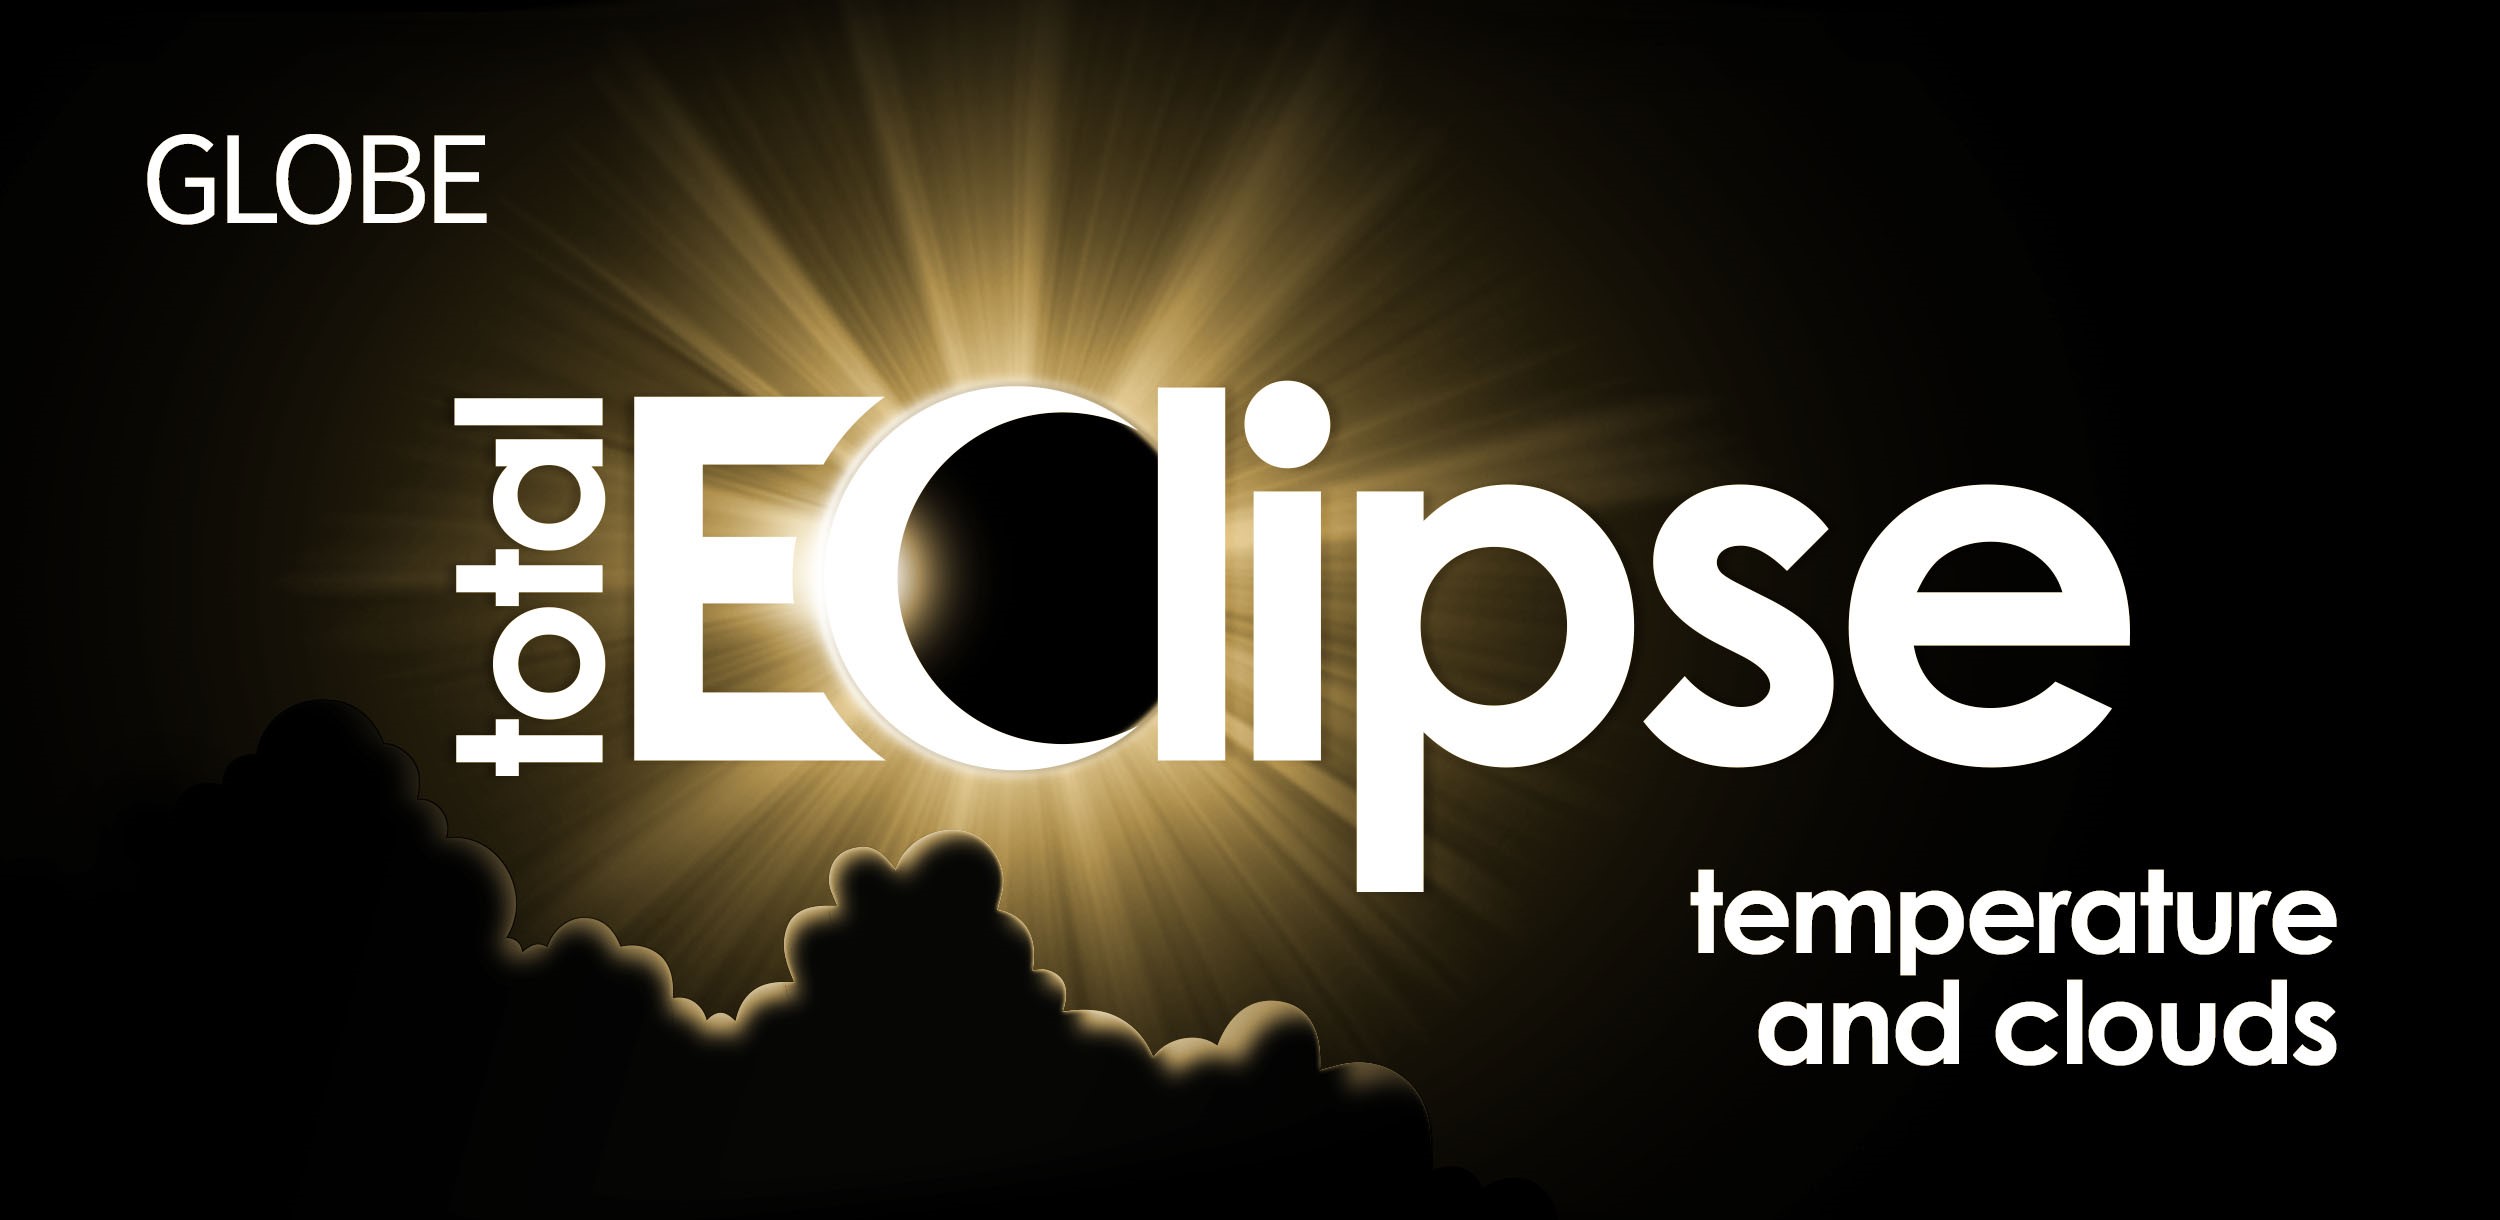 GLOBE Total Eclipse graphic